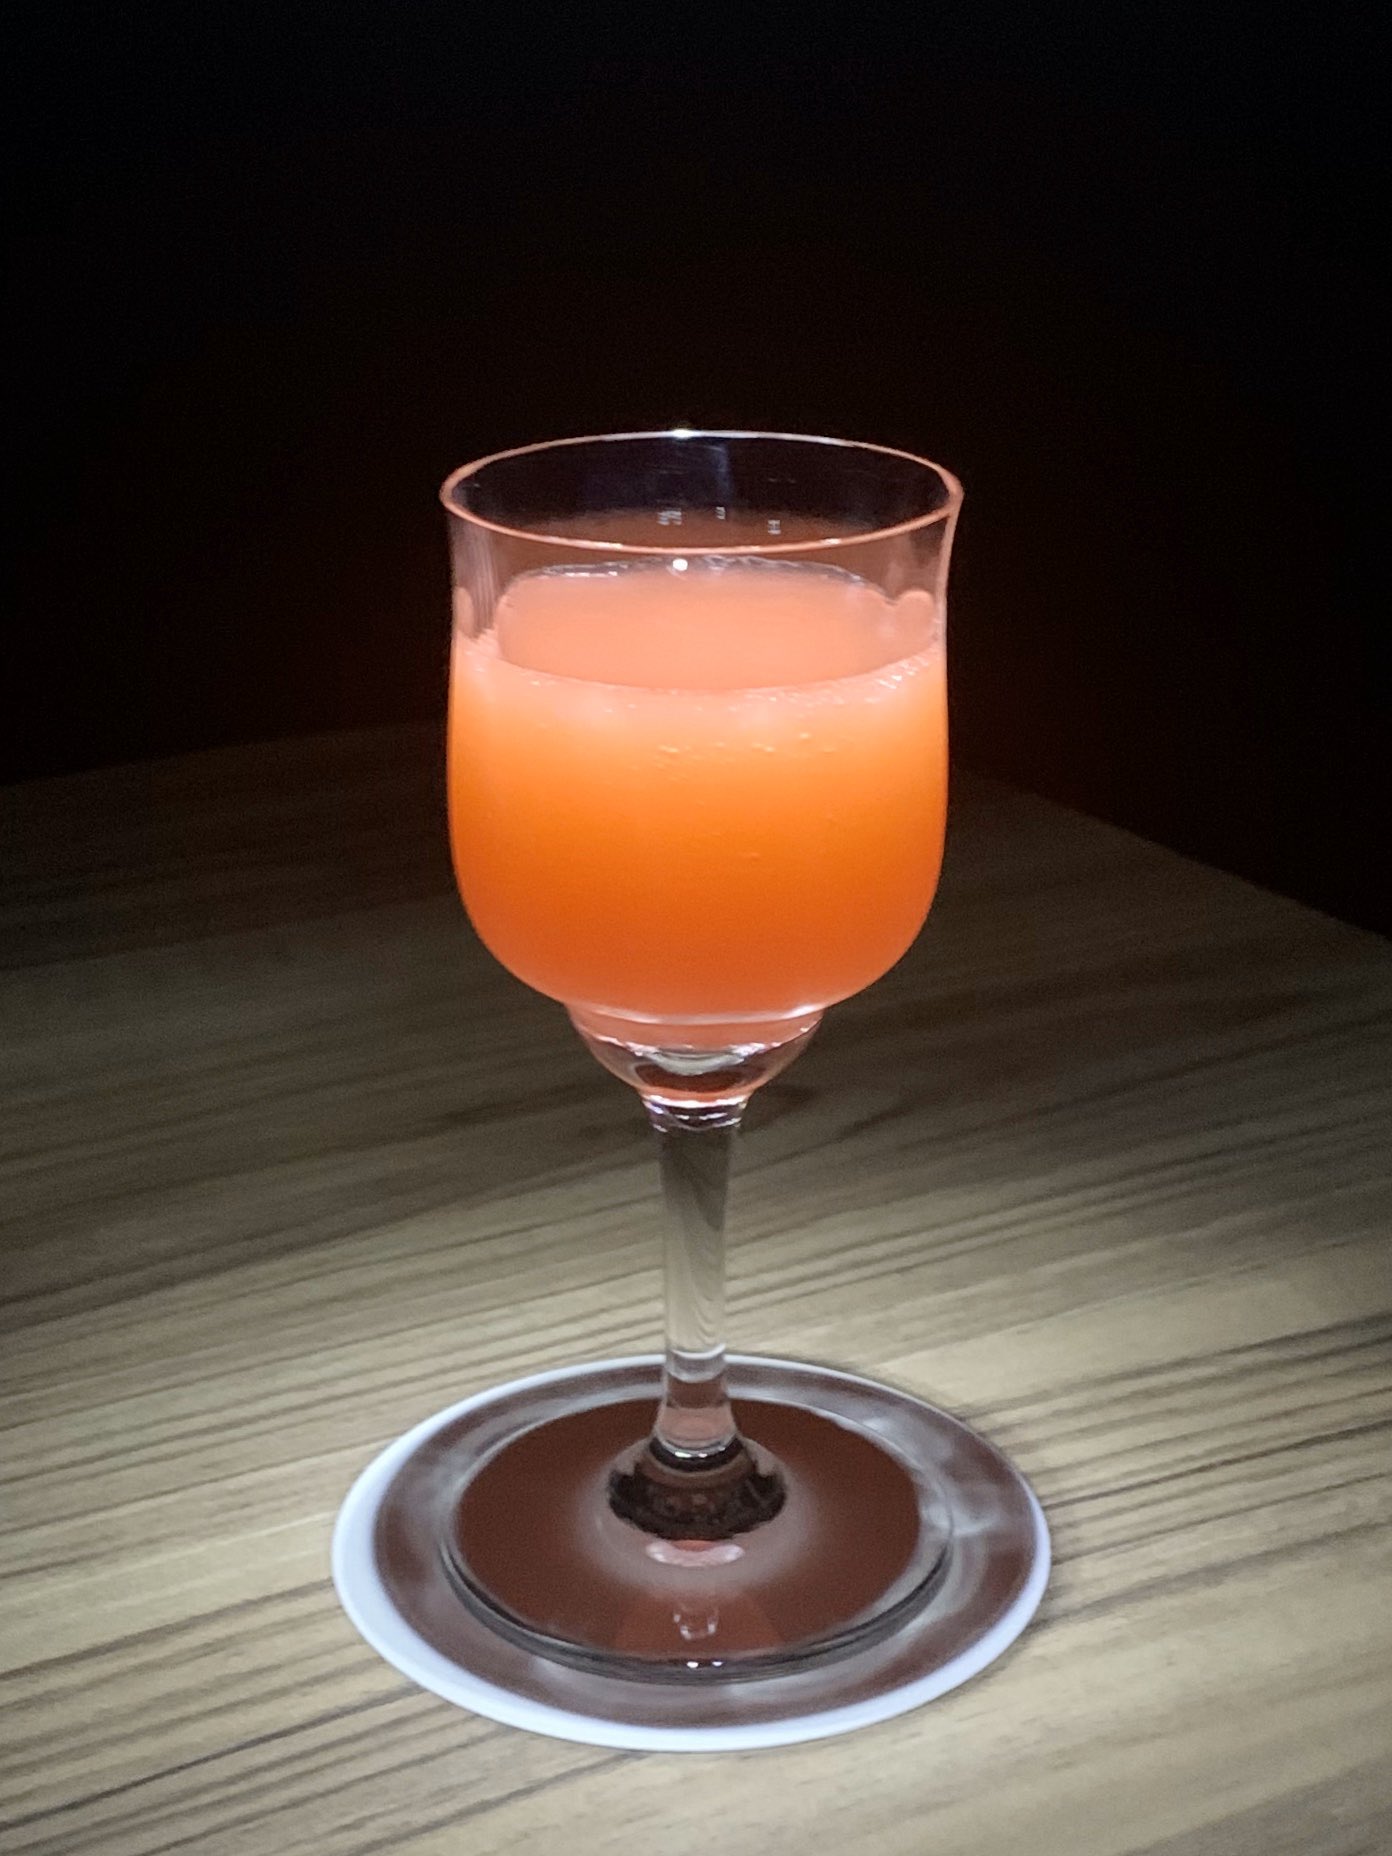 Bar Luciano ヨコハマ ジン ウォッカ アブサン オレンジジュース グレナデンシロップのショートカクテル 綺麗な オレンジ色は 横浜 の夕焼けをイメージし イギリス ロシア フランスの各国を代表するお酒と最後にアジアの ヨコハマ という名前を